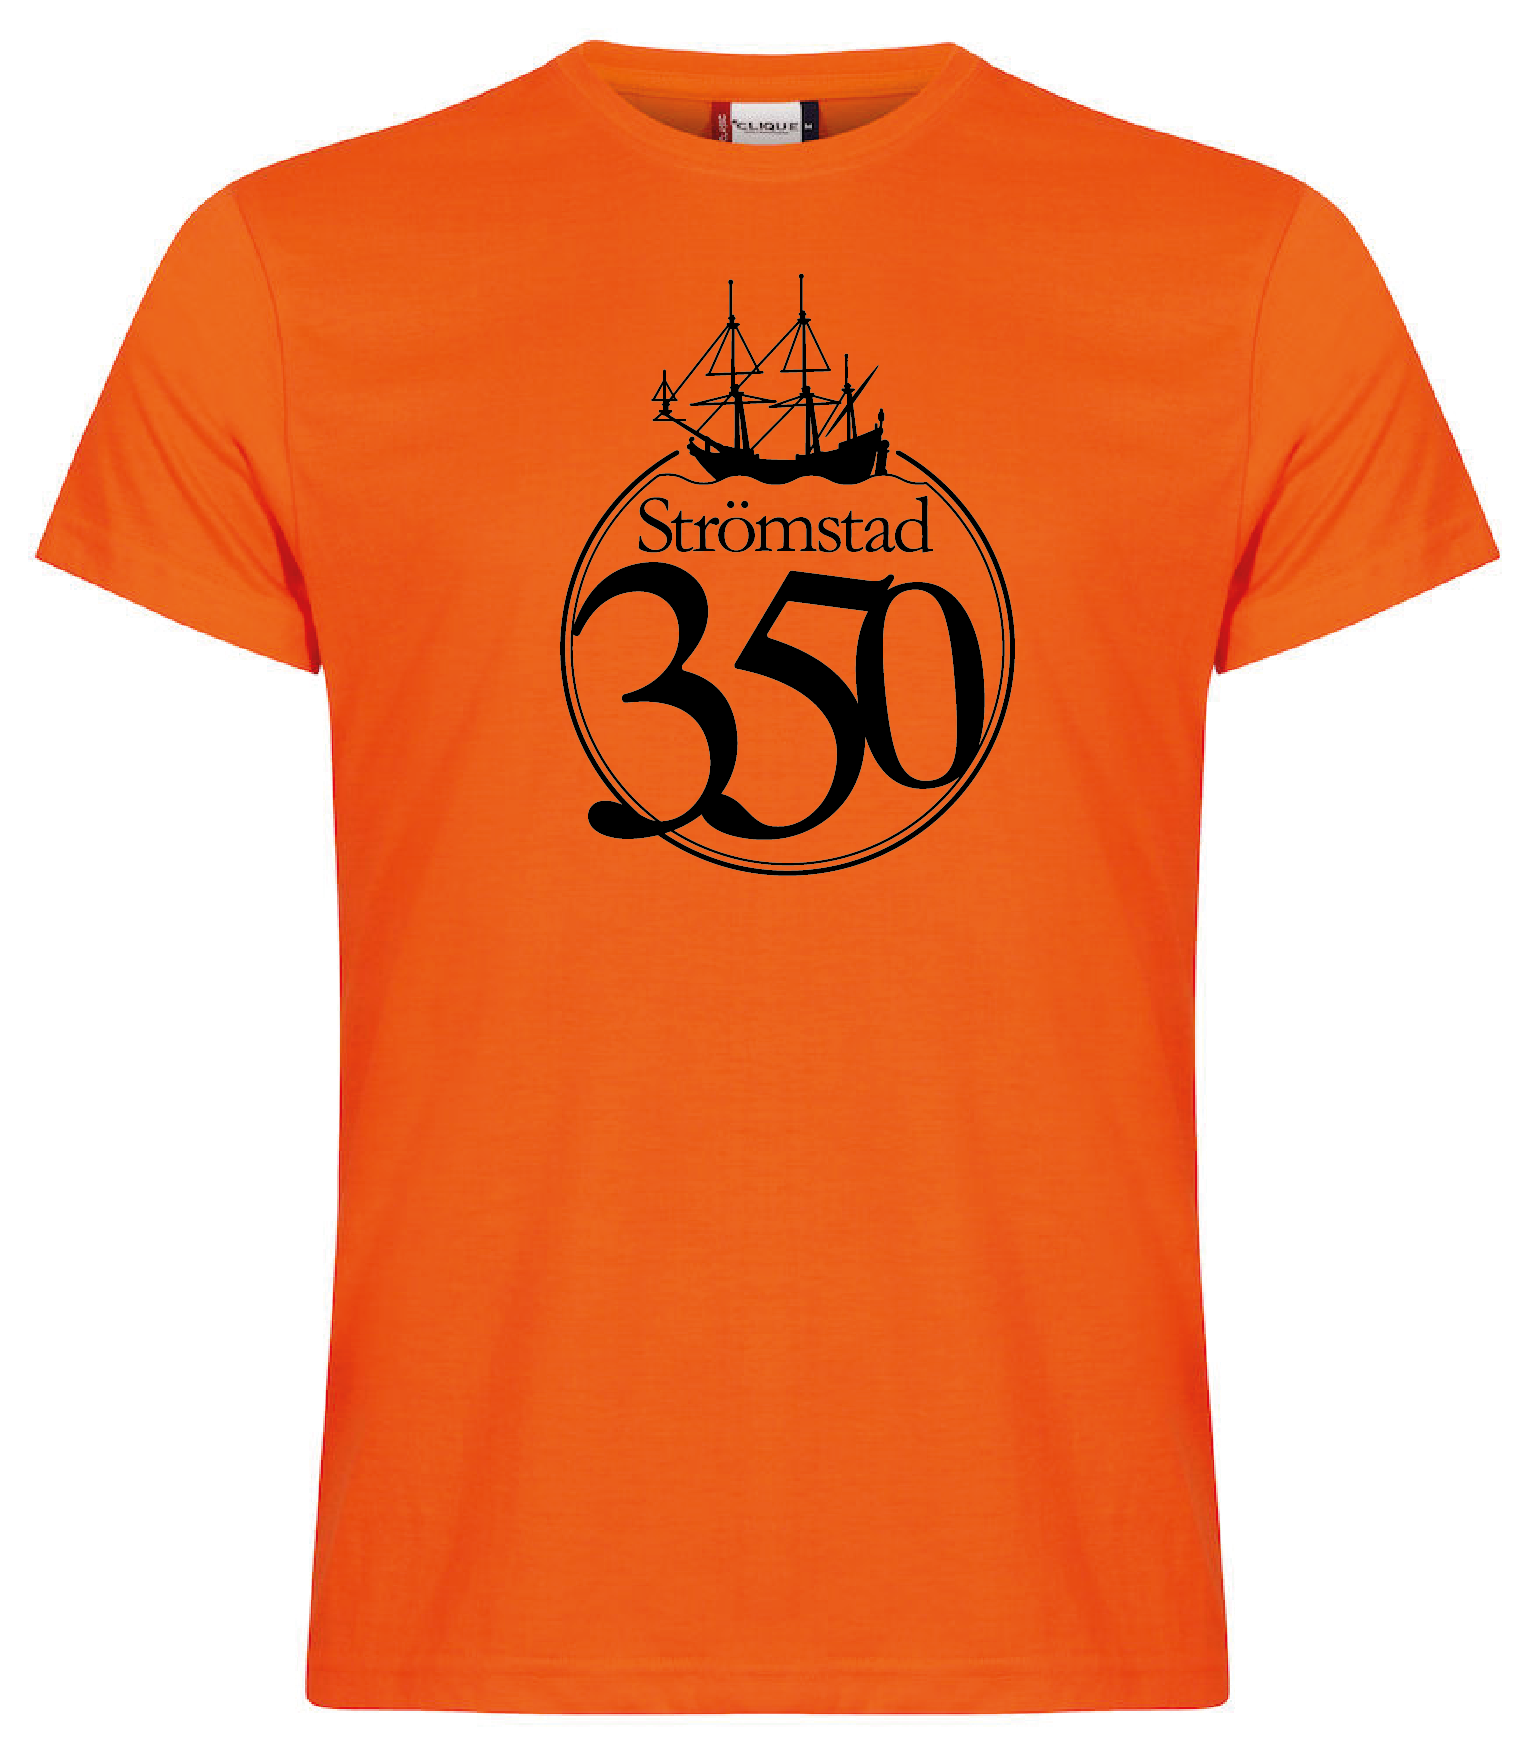 Orange T-shirt "STRÖMSTAD 350 år"